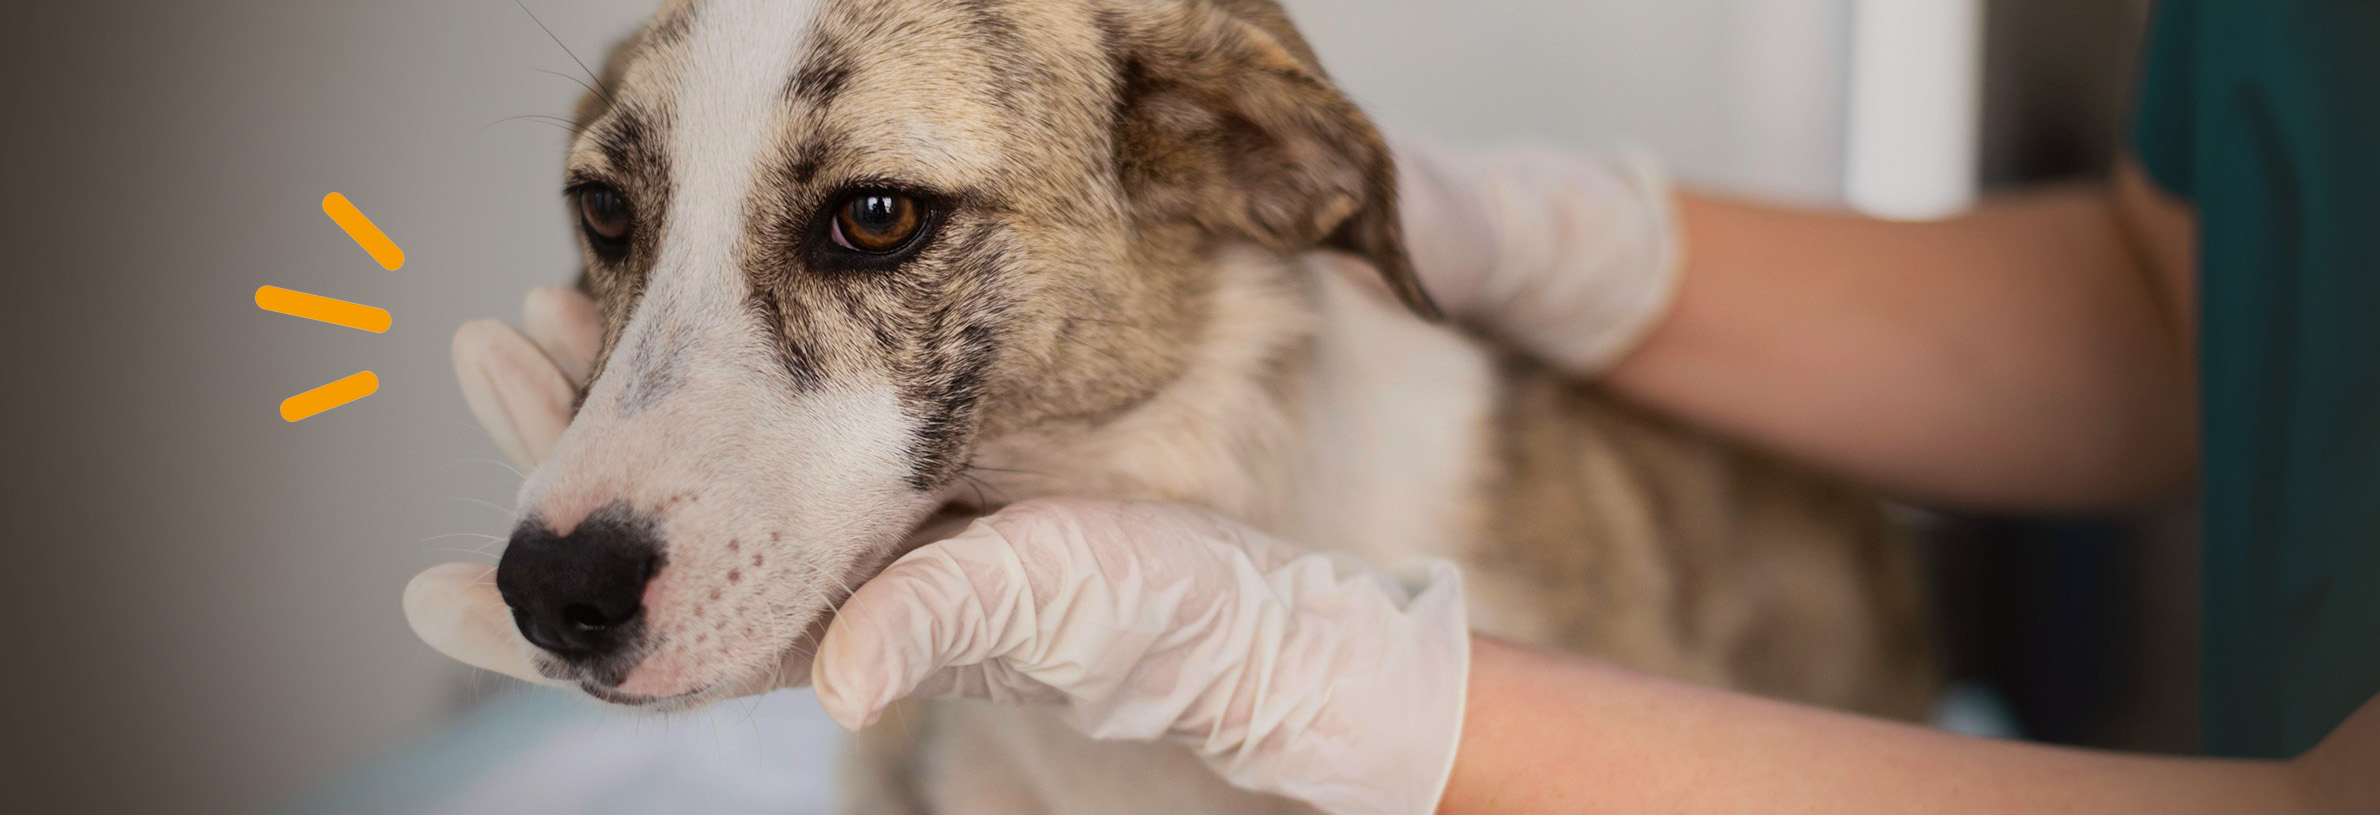 Hondenbaasje schrikt van dierenartsrekening: €3.557,25